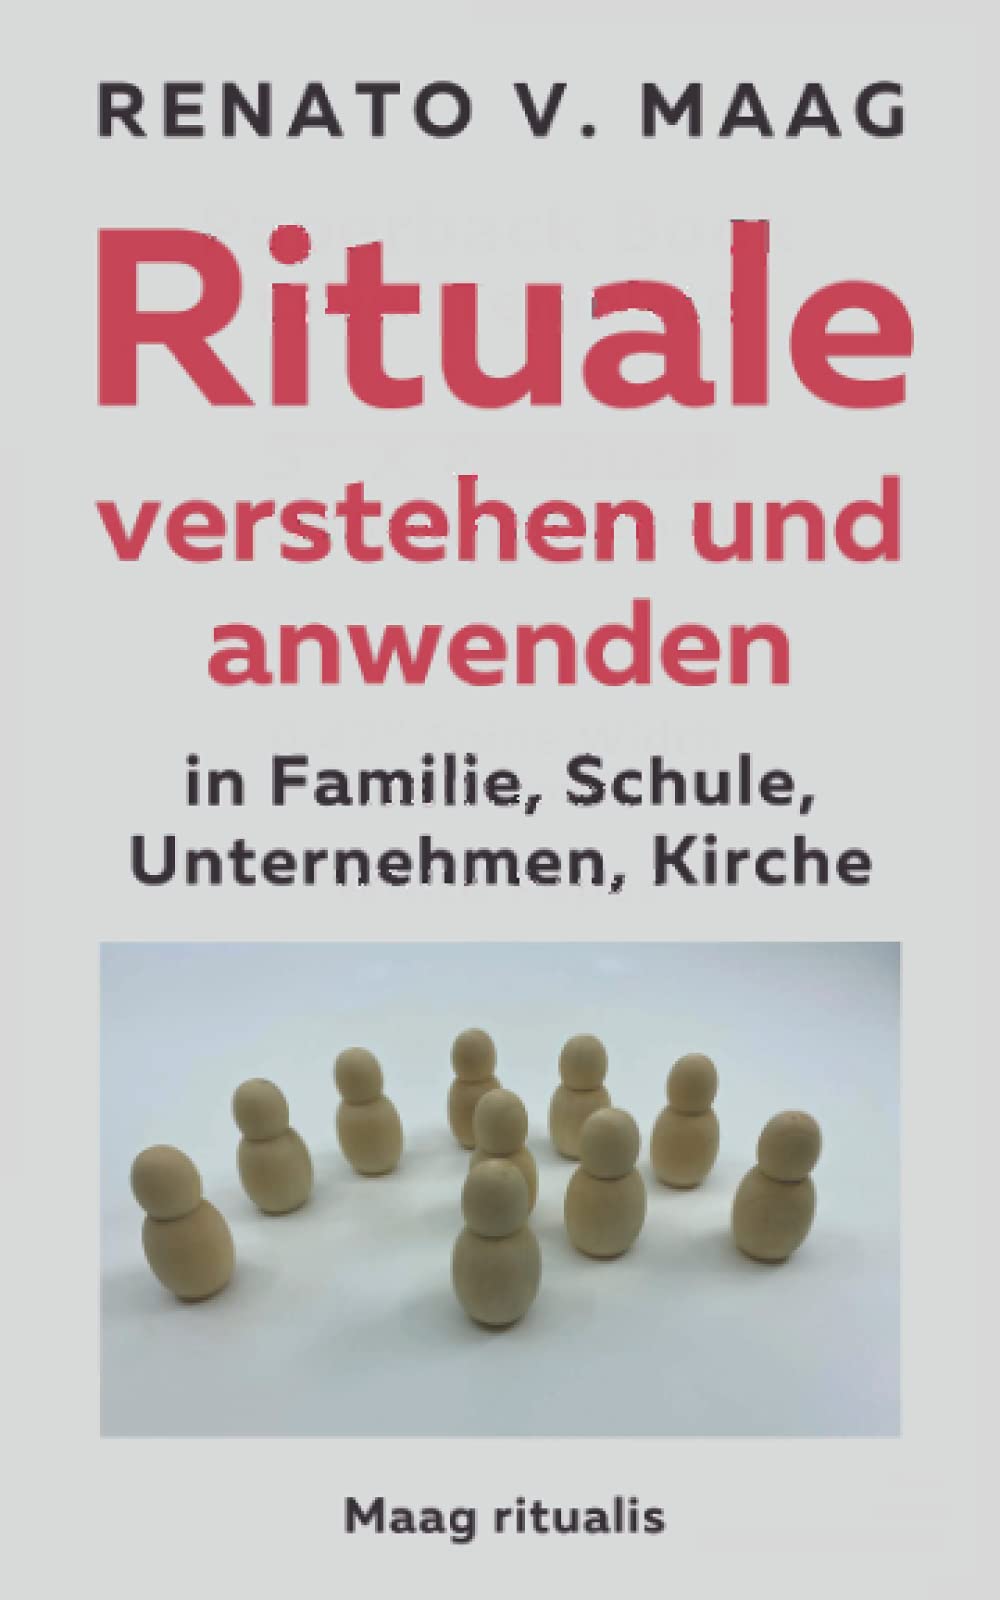 Renato Maag: Rituale verstehen und anwenden in Familie, Schule, Unternehmen, Kirche